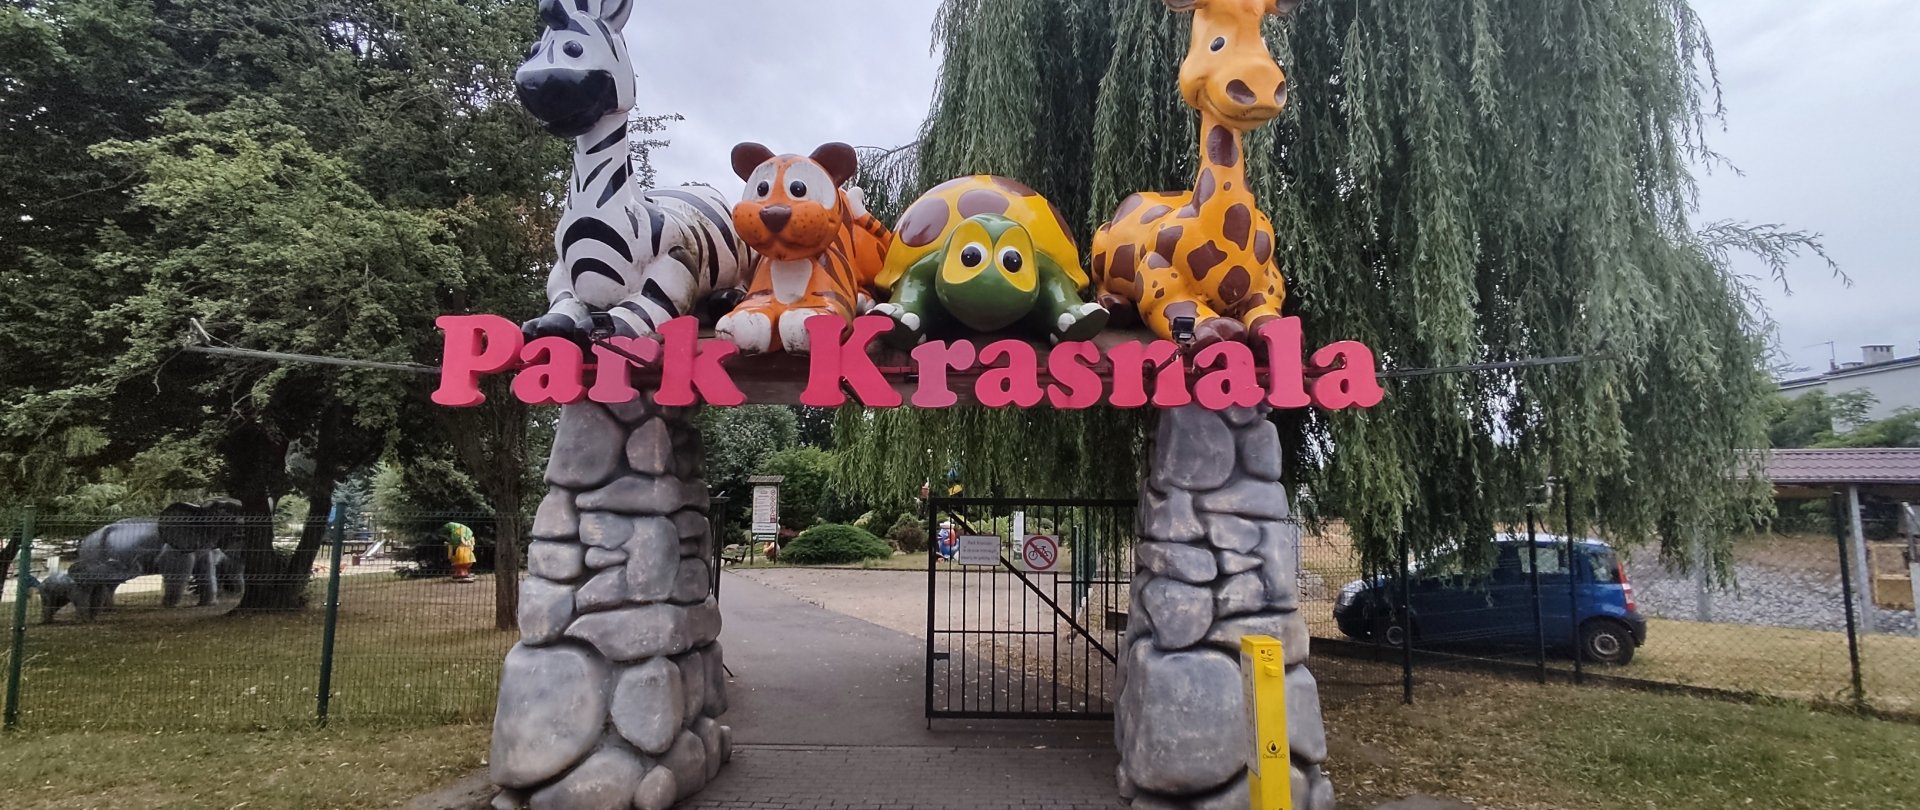 Park Krasnala - centrum rekreacji